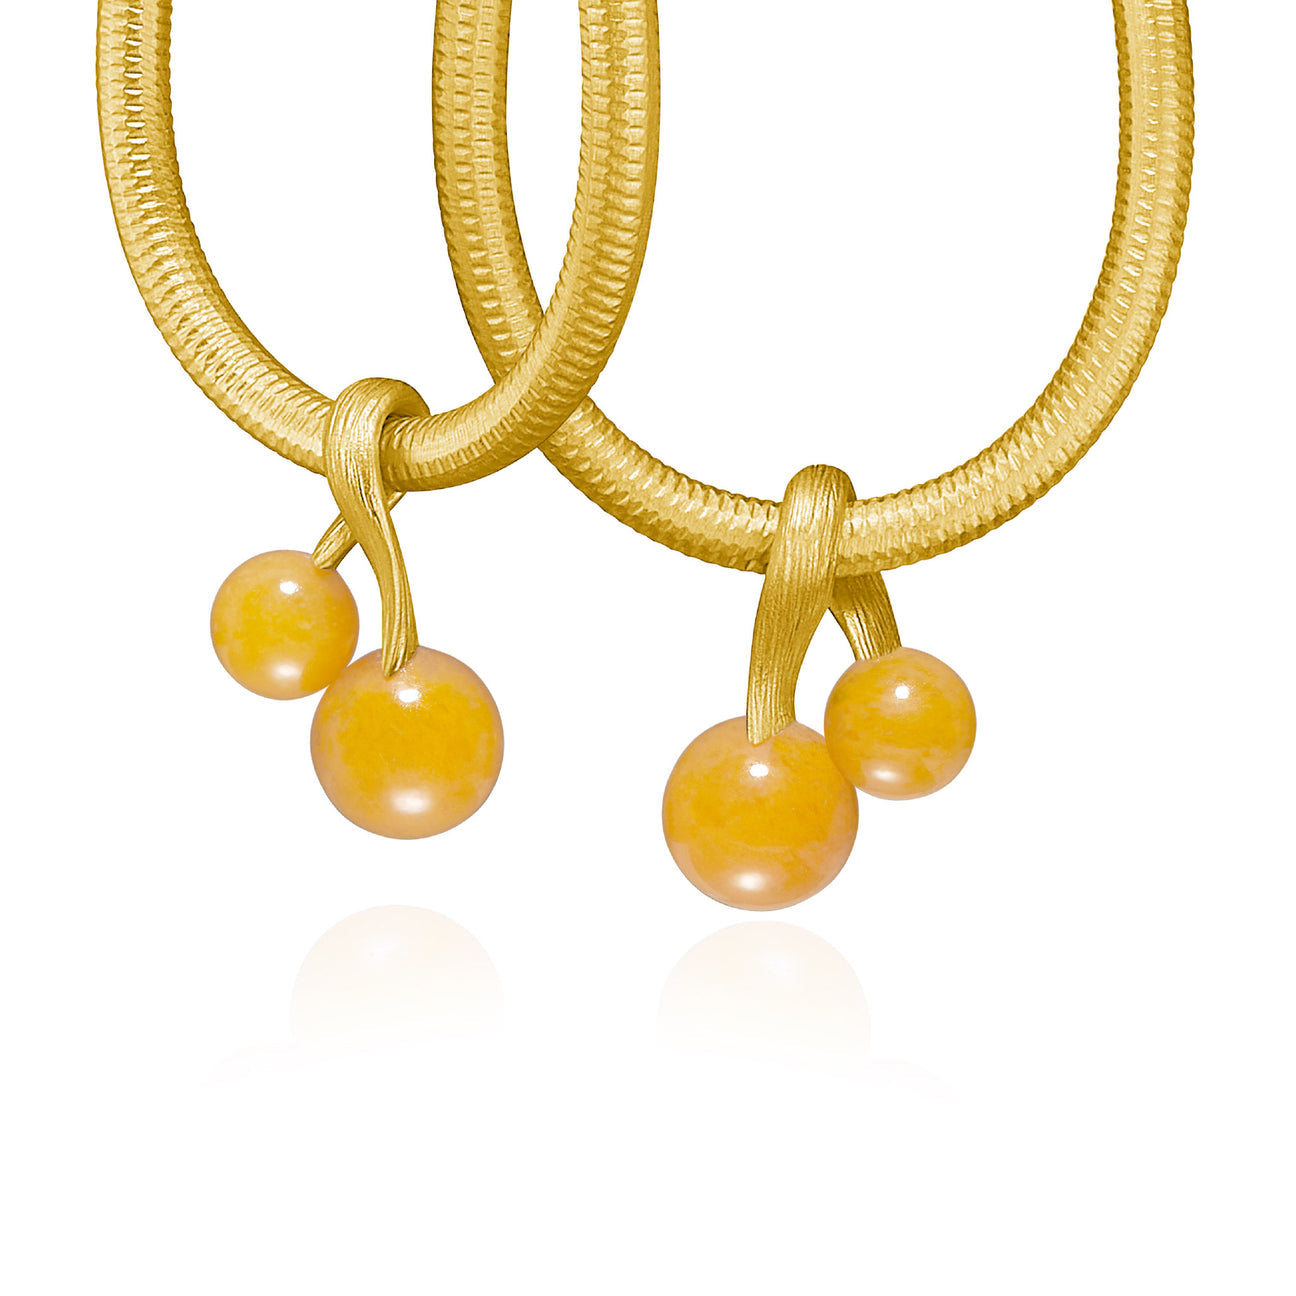 Vega vedhæng med gul aventurin - par fra Dulong Fine Jewelry